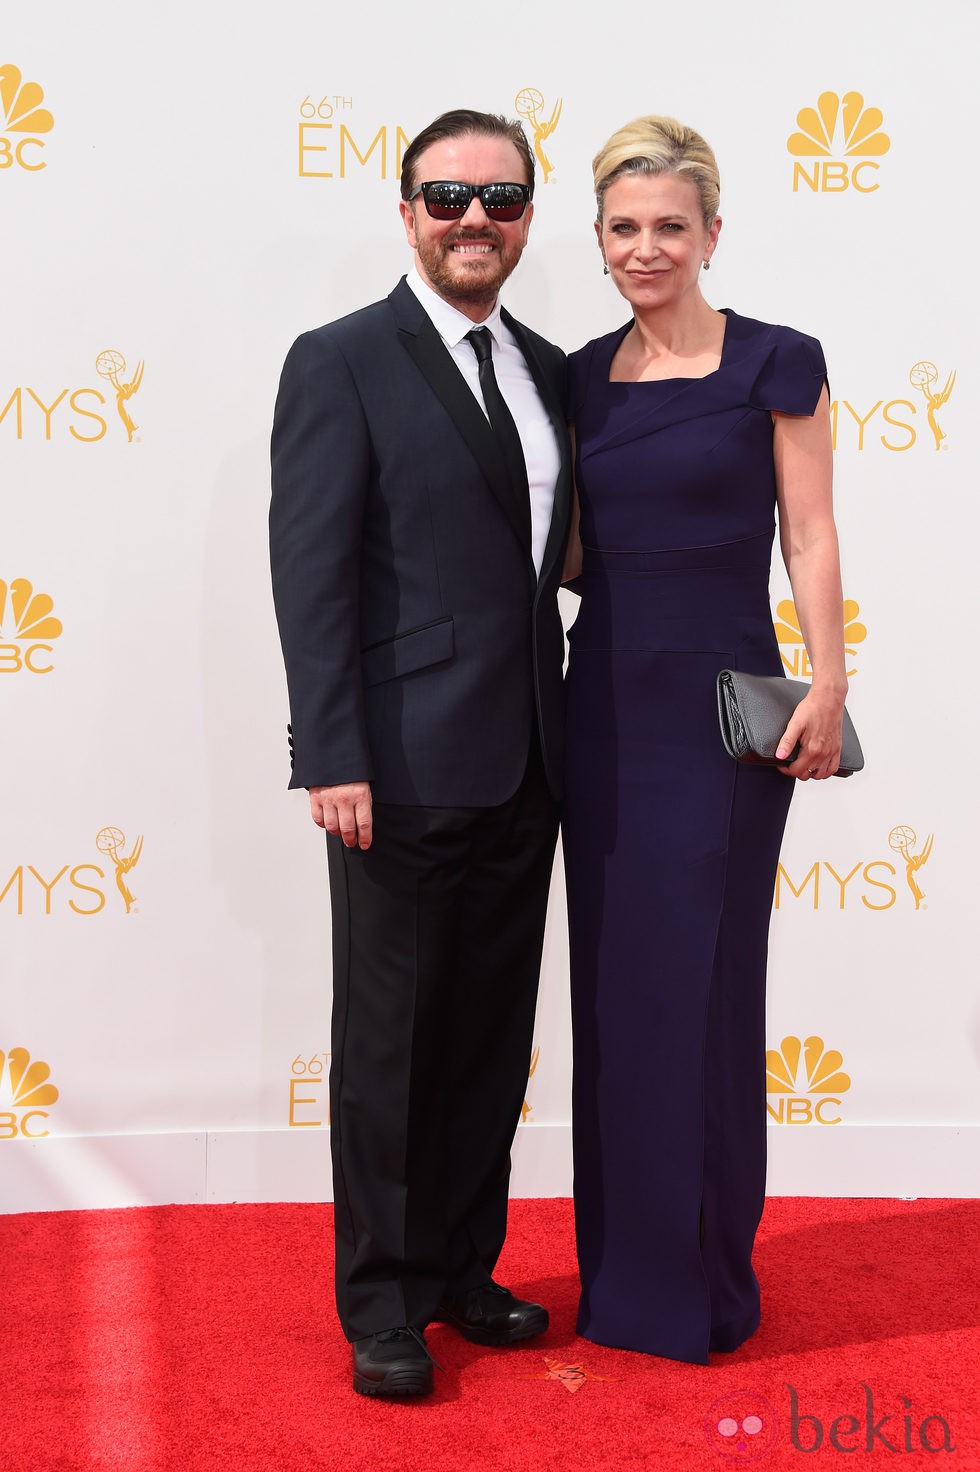 Jane Fallon y Ricky Gervais en la alfombra roja de los Premios Emmy 2014